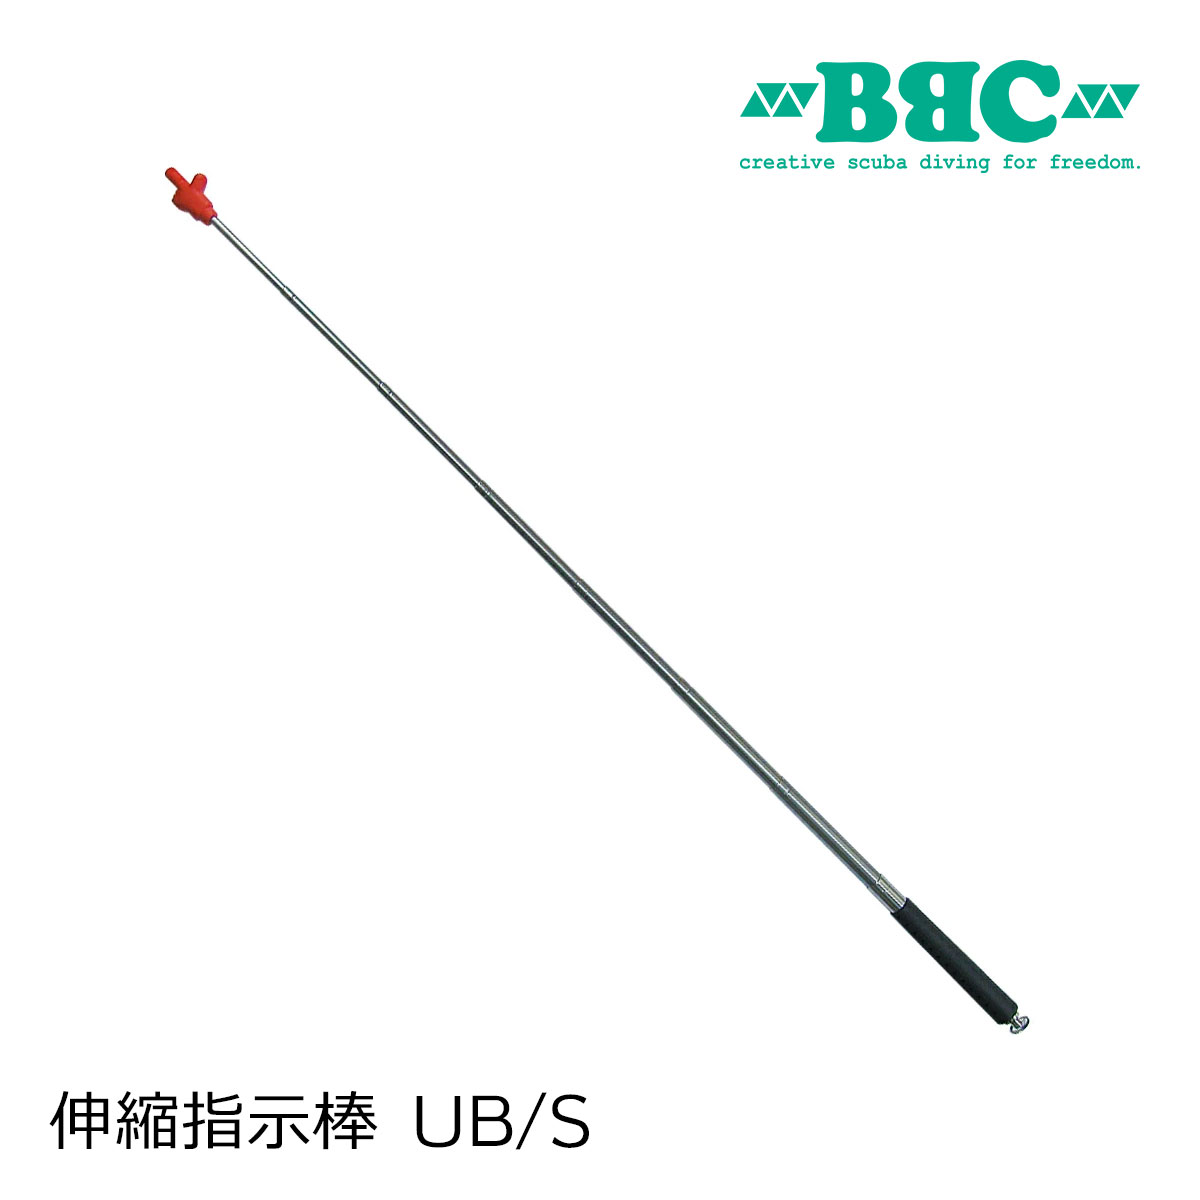 BBC ビービーシー 伸縮指示棒 UB/S ユービー 日本製 ステンレス 伸びる指示棒 スキューバダイビング 支持棒 指示棒